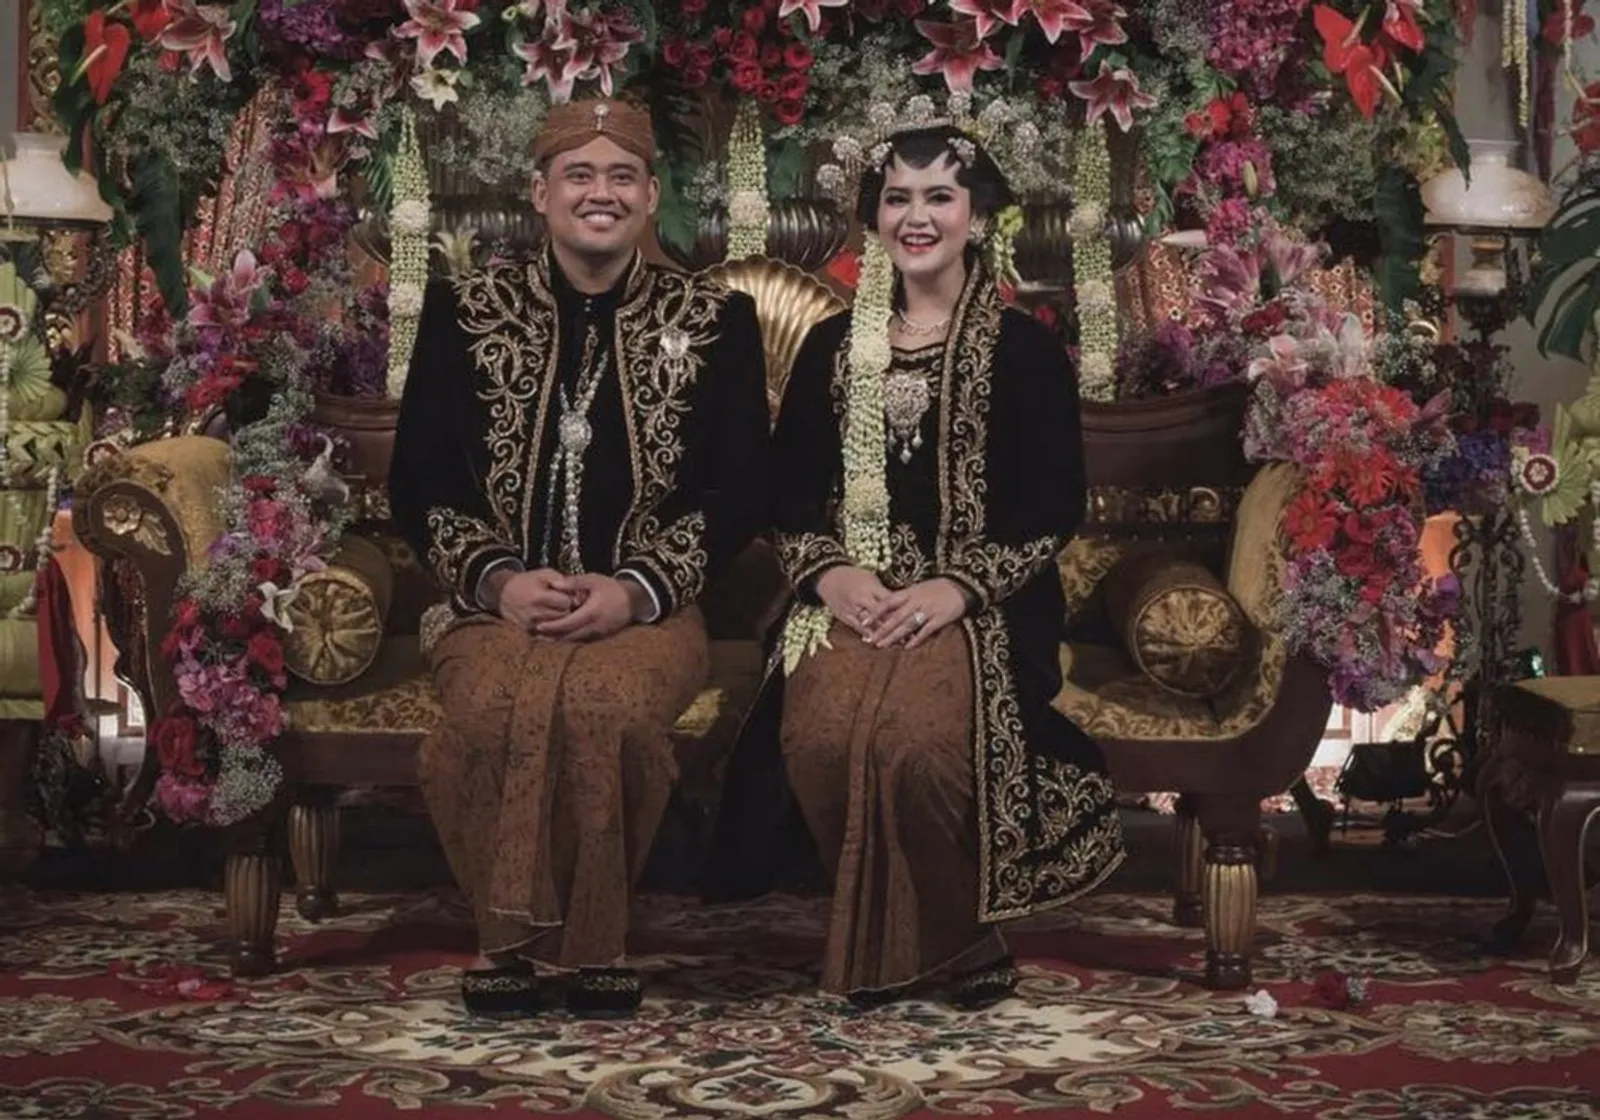 6 Mitos Larangan Pernikahan Menurut Adat Jawa, Nggak Boleh Asal-asalan